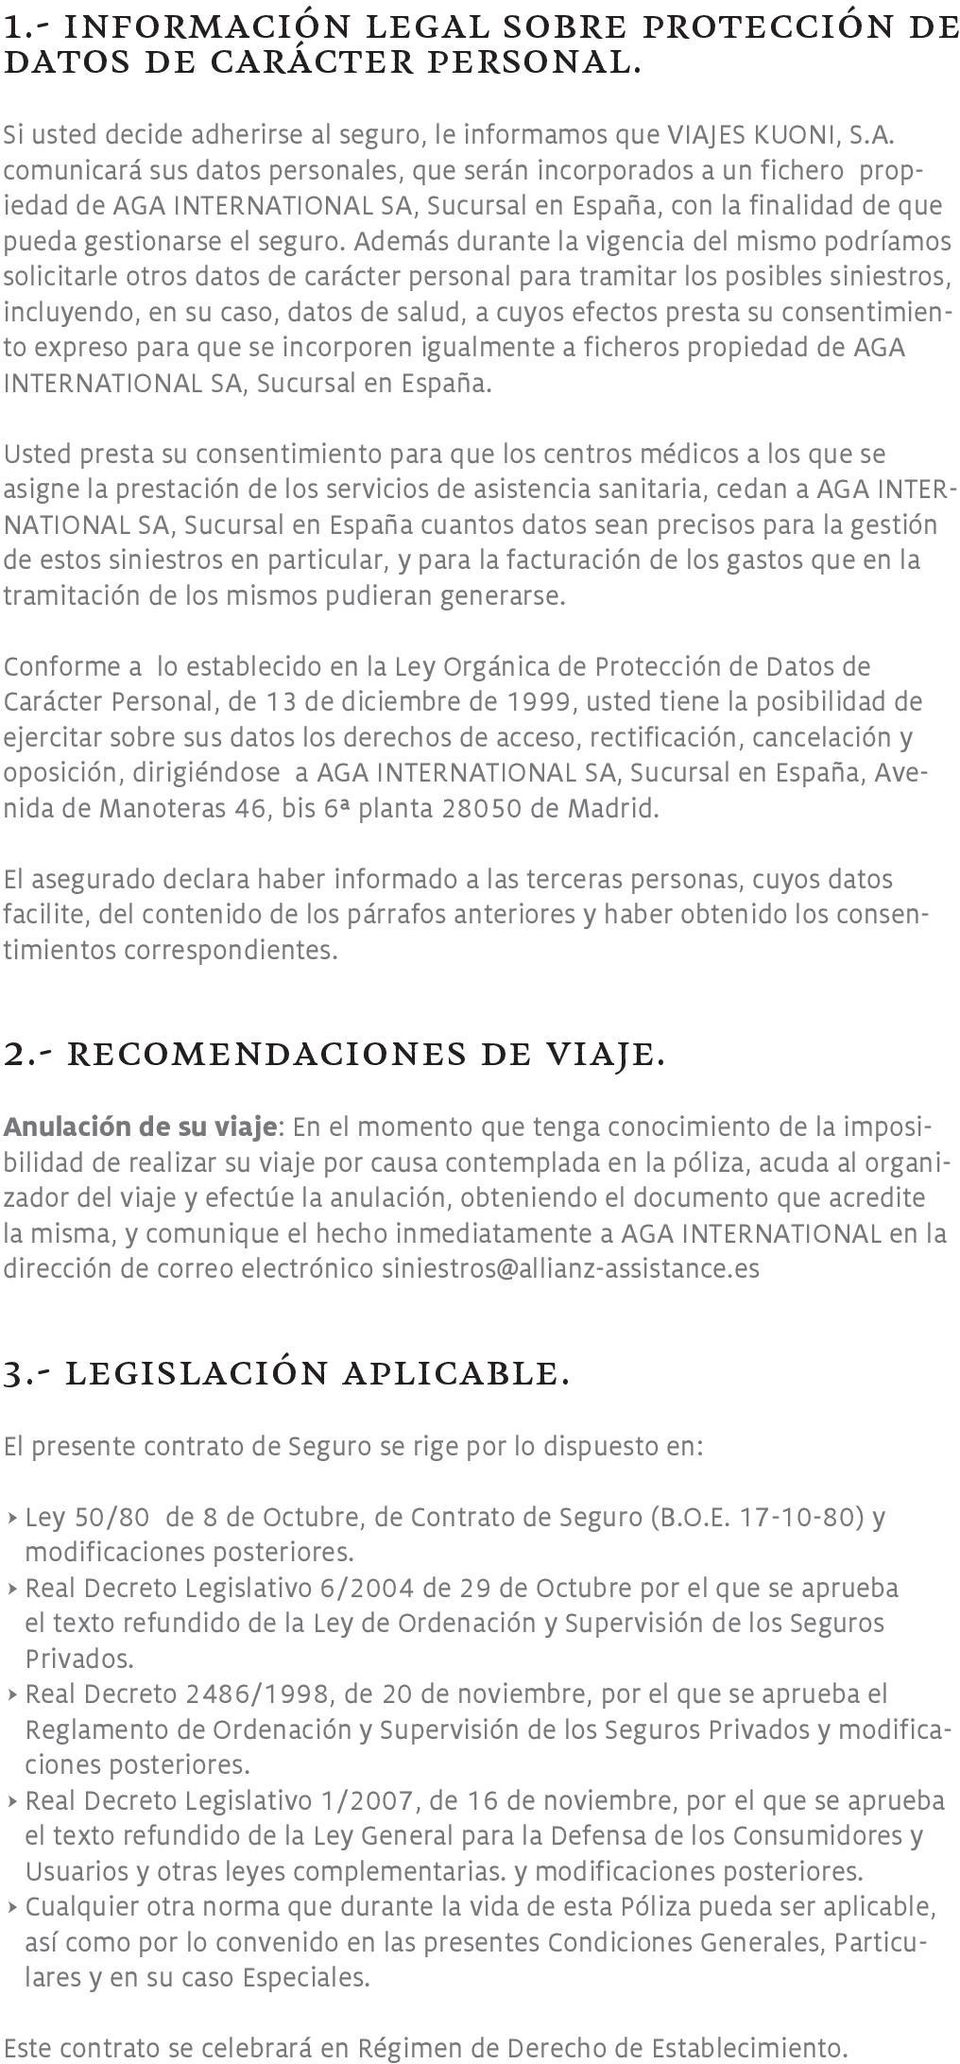 consentimiento expreso para que se incorporen igualmente a ficheros propiedad de AGA INTERNATIONAL SA, Sucursal en España.